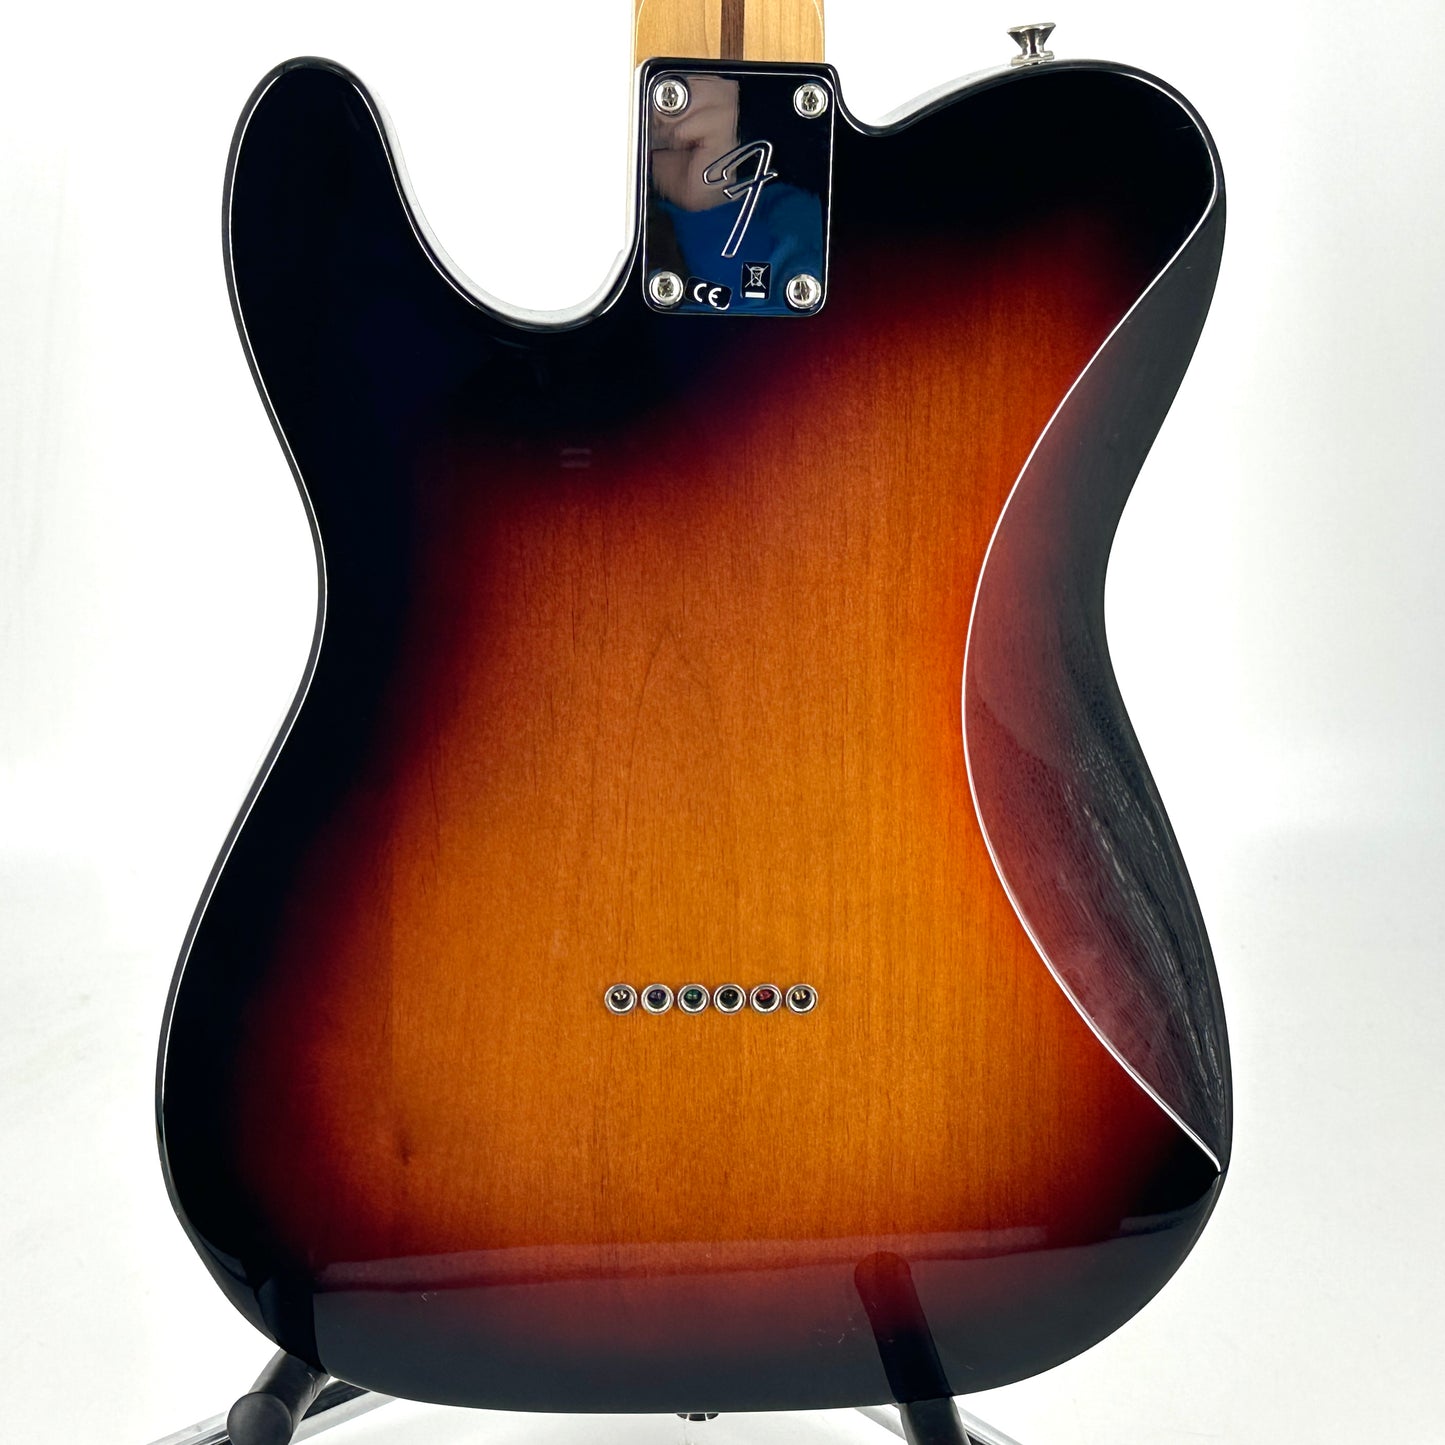 2019 Fender Player Telecaster HH - Sunburst